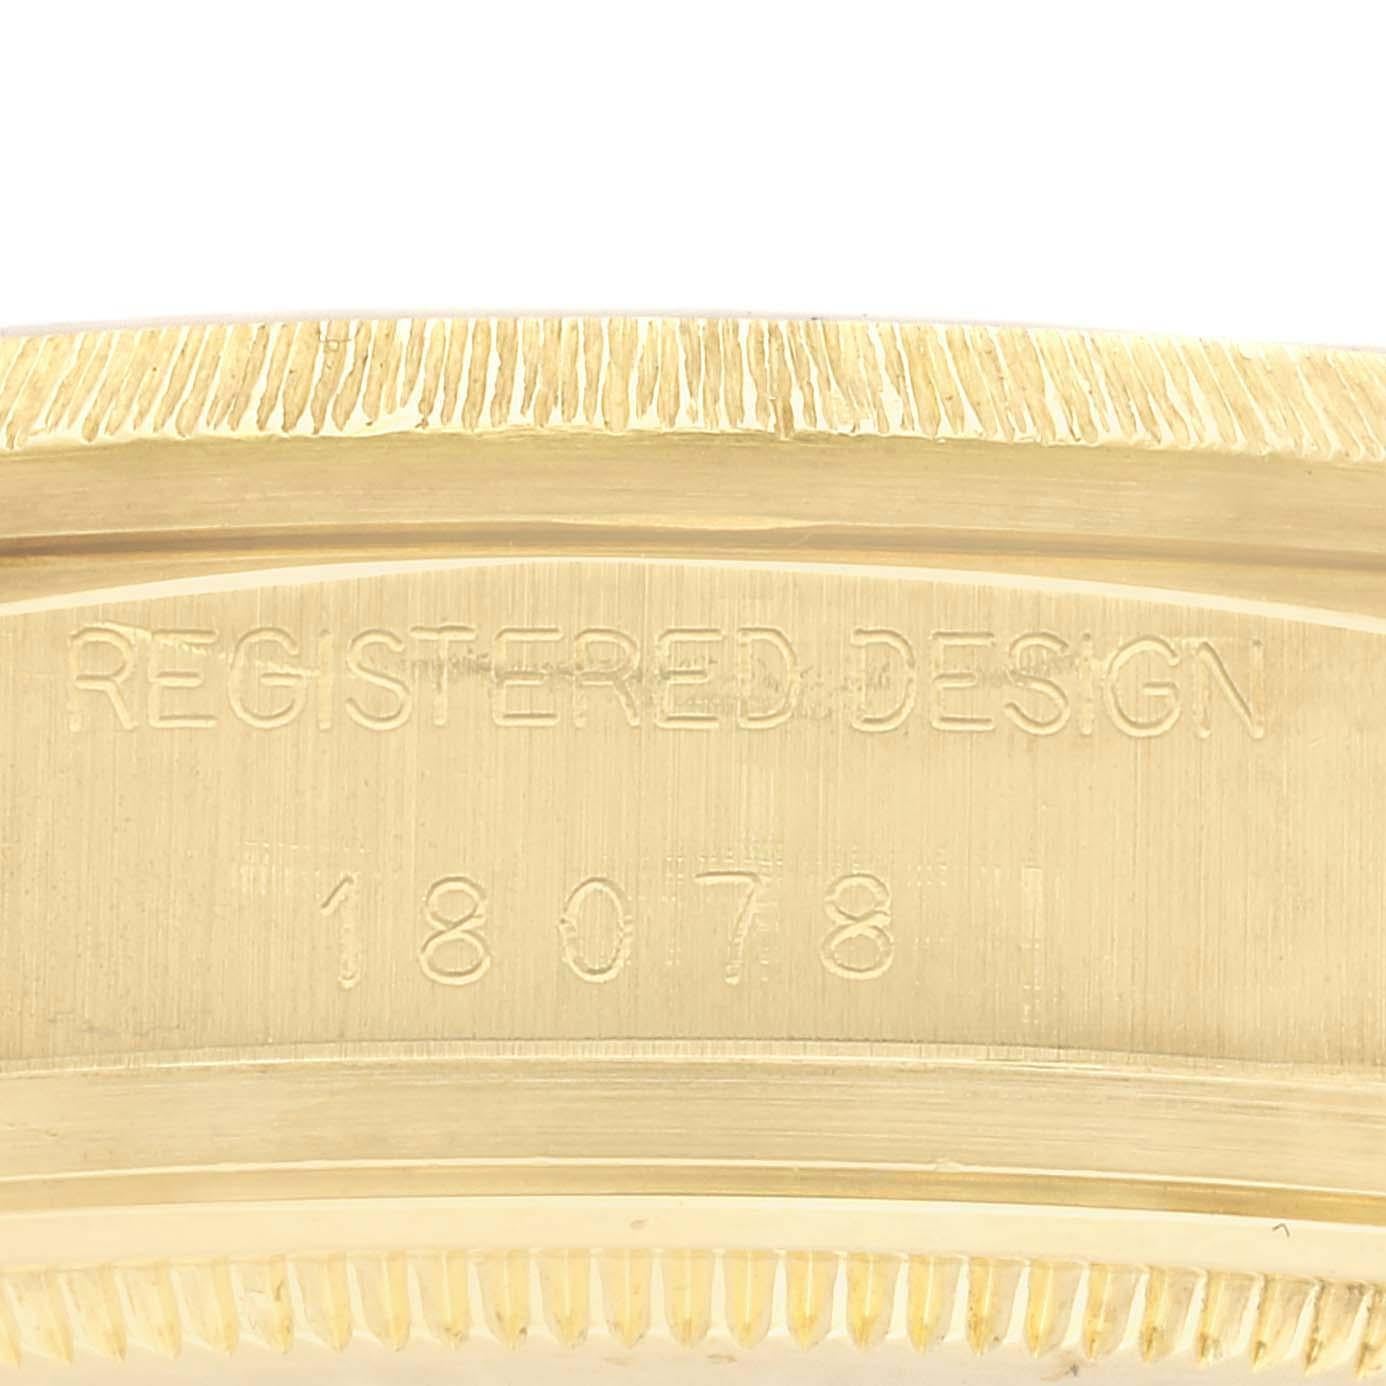 Rolex Präsident Day-Date Diamant-Zifferblatt Gelbgold Bark Finish Herrenuhr 18078. Offiziell zertifiziertes Chronometer-Automatikuhrwerk mit Datumsschnellverstellung. Oyster-Gehäuse aus 18 Karat Gelbgold mit einem Durchmesser von 36,0 mm. Rolex Logo